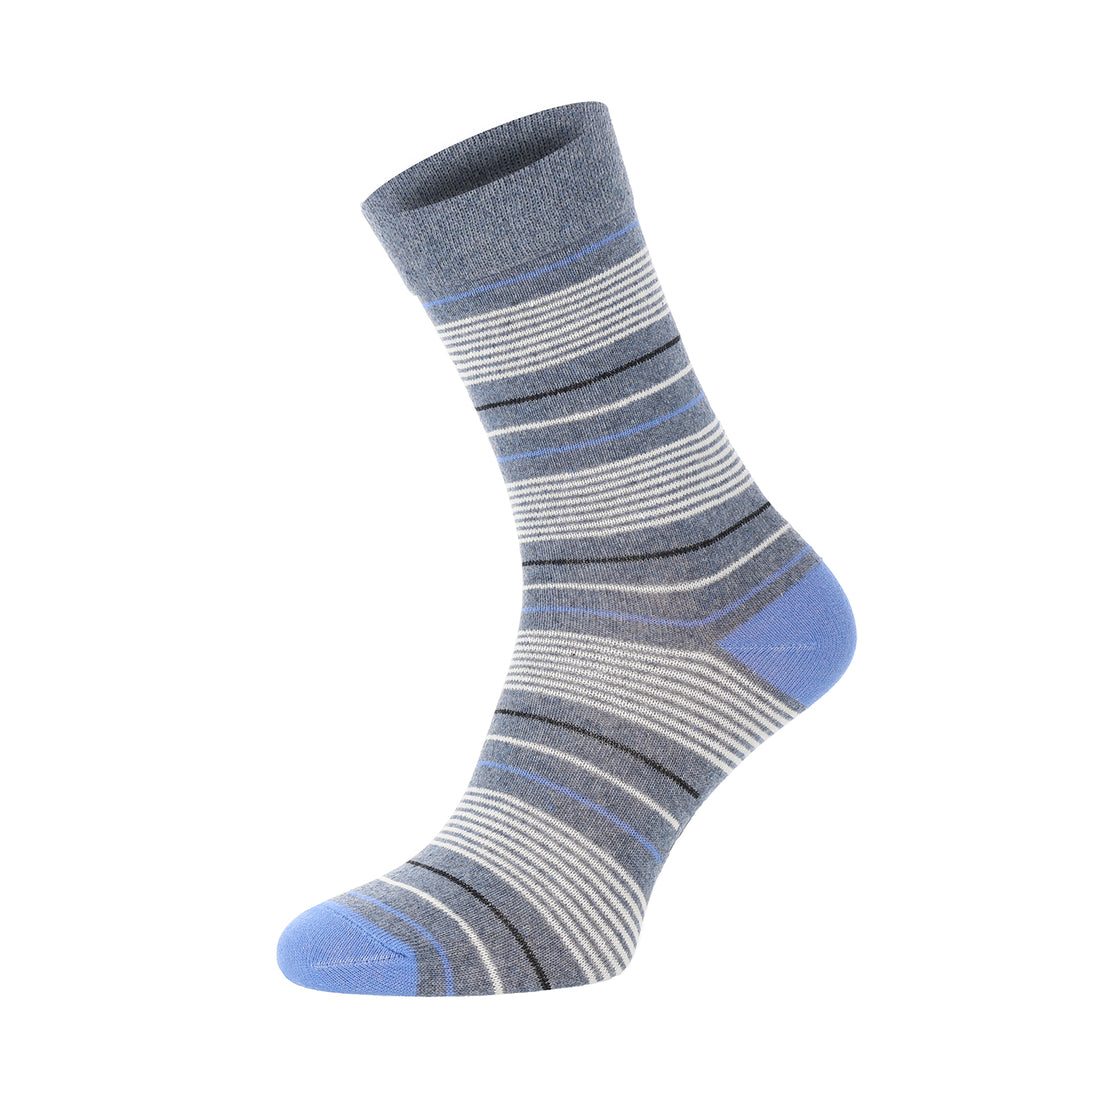 ChiliLifestyle Socken Streifen Design, 5 Paar, für Damen, Baumwolle